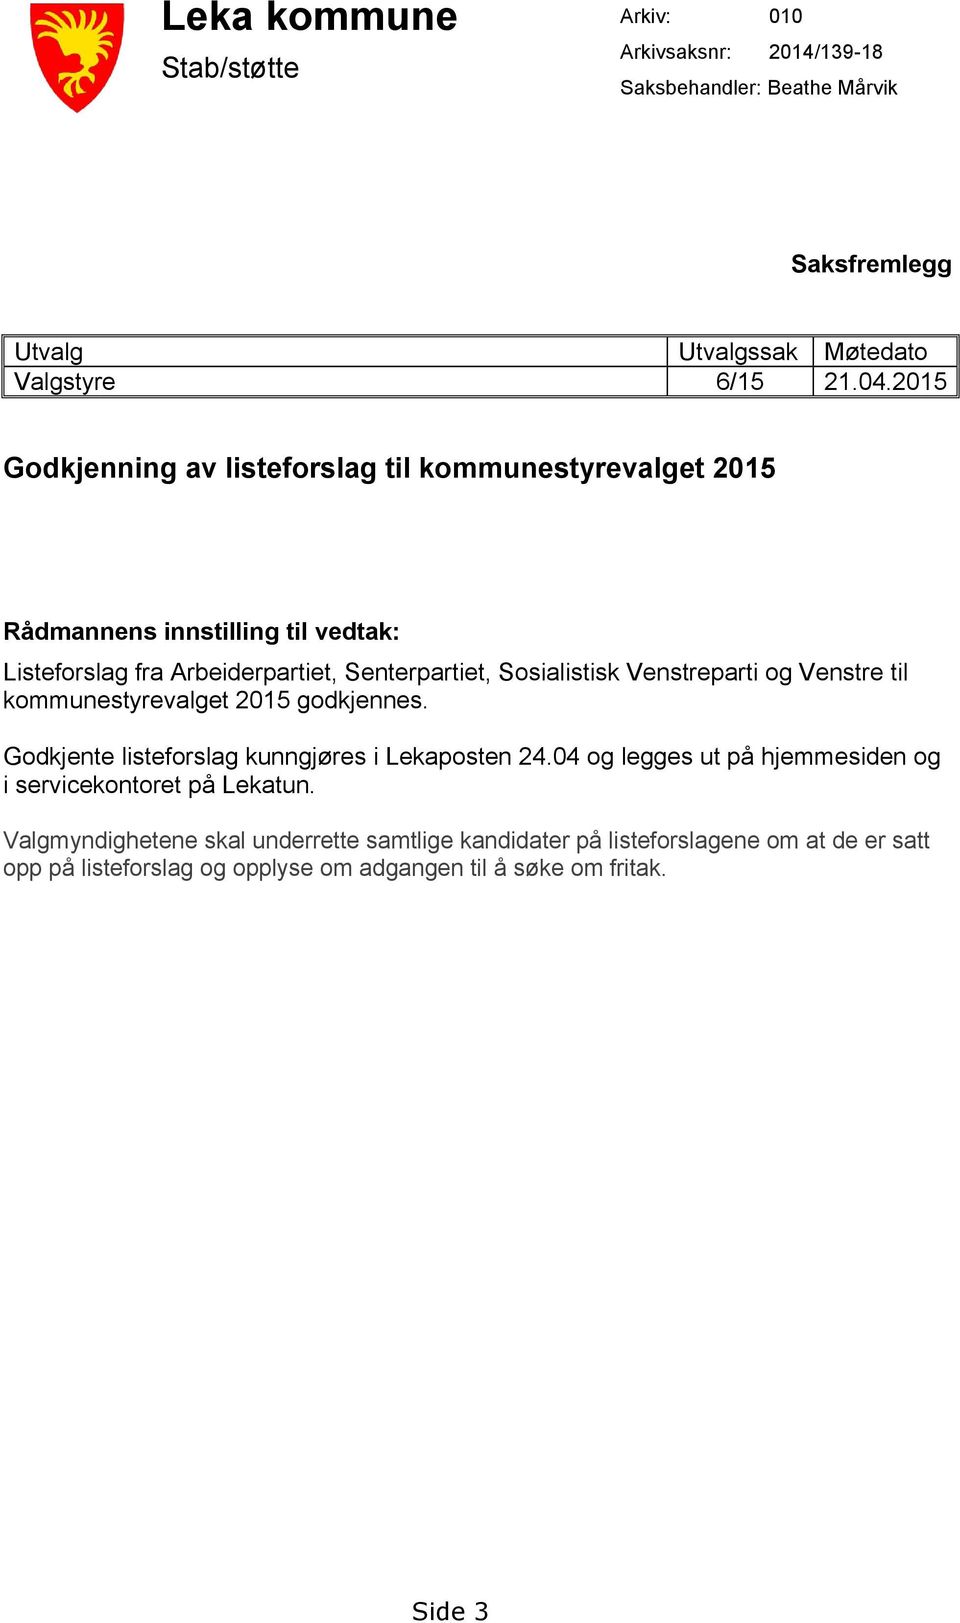 Venstreparti og Venstre til kommunestyrevalget 2015 godkjennes. Godkjente listeforslag kunngjøres i Lekaposten 24.